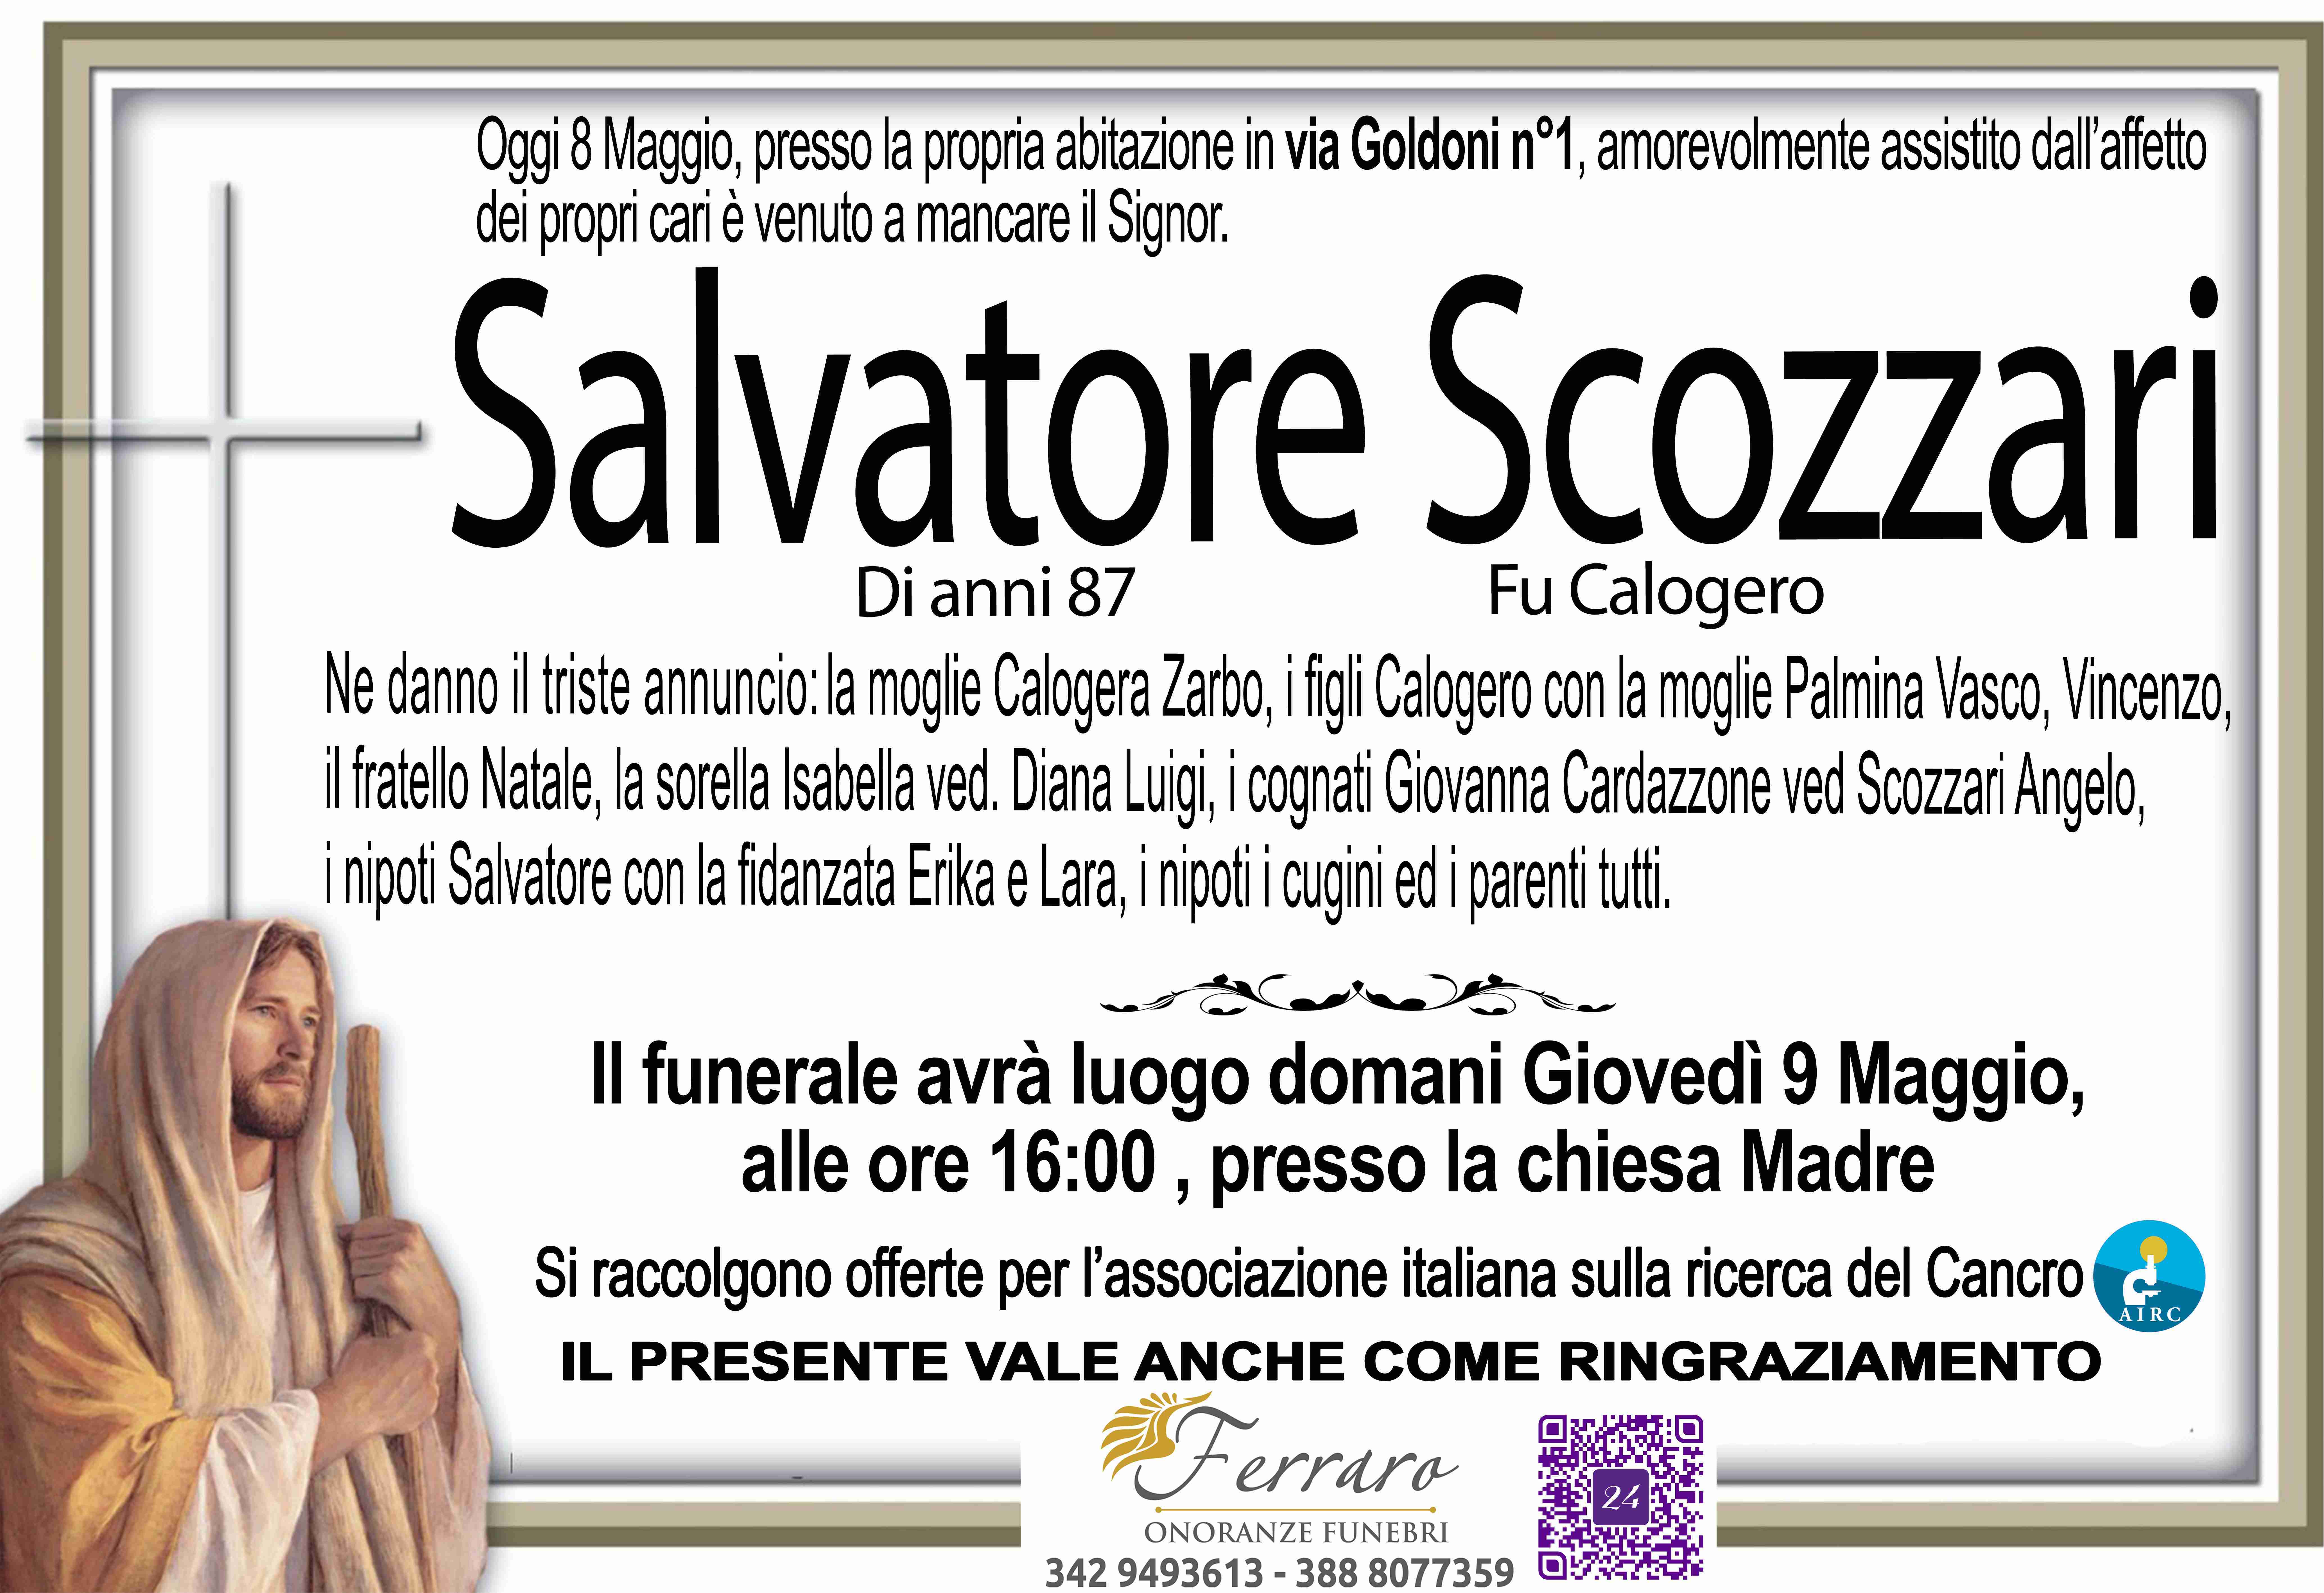 Salvatore Scozzari